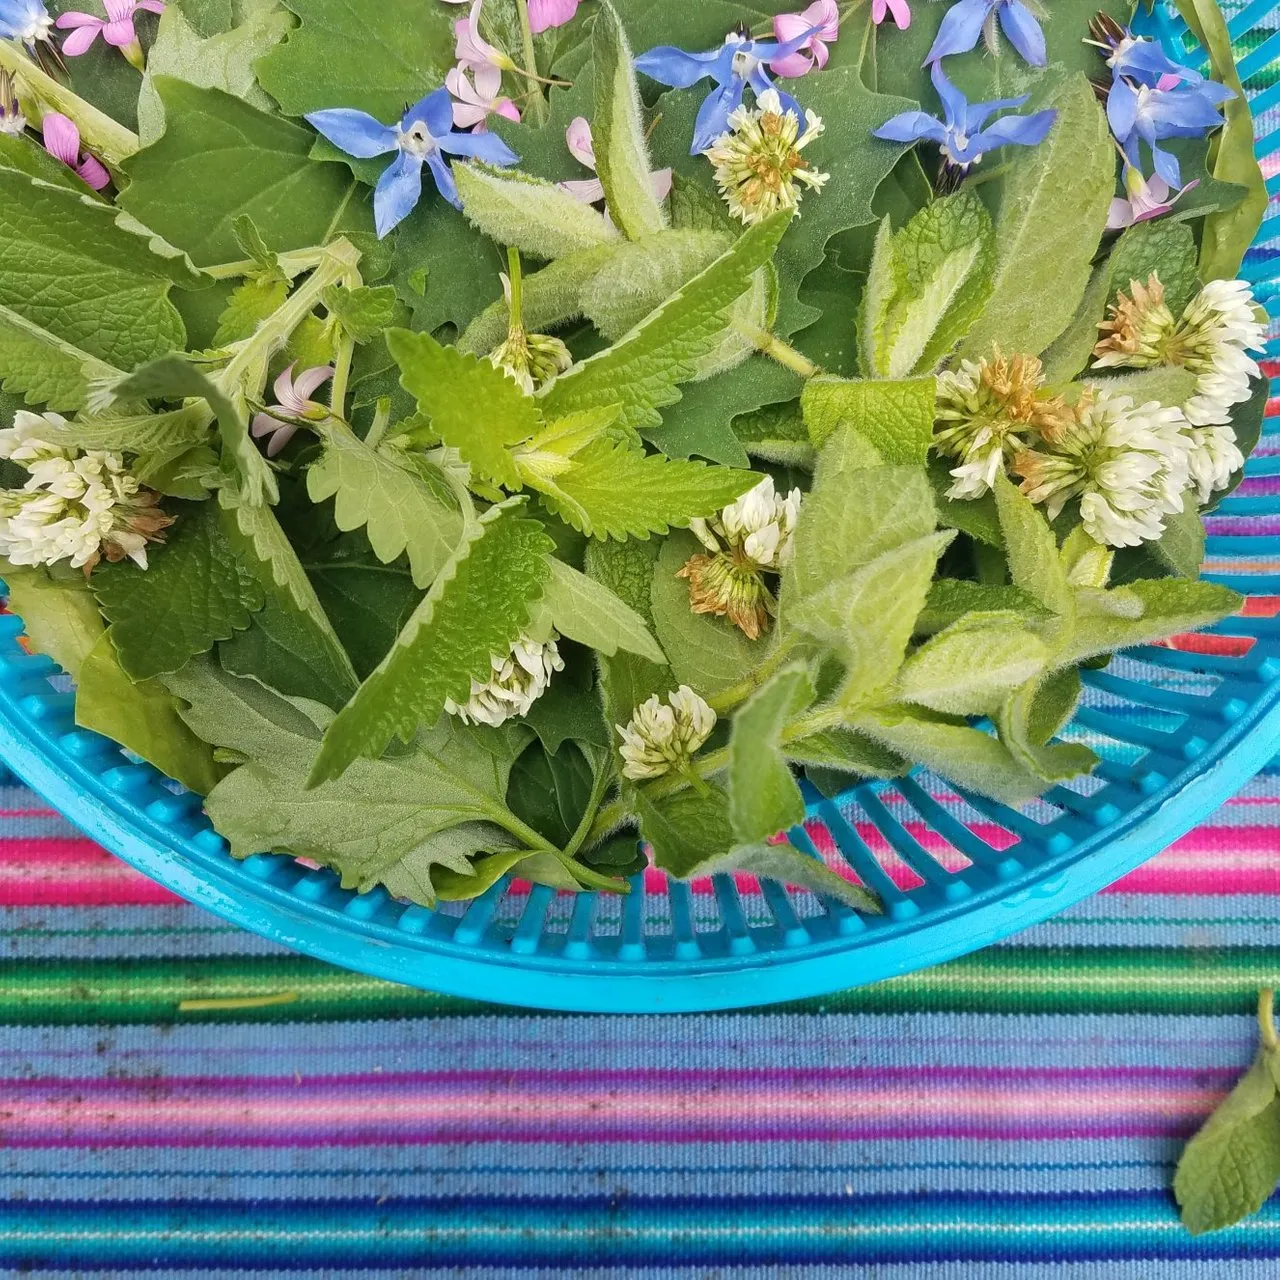 herbal salad